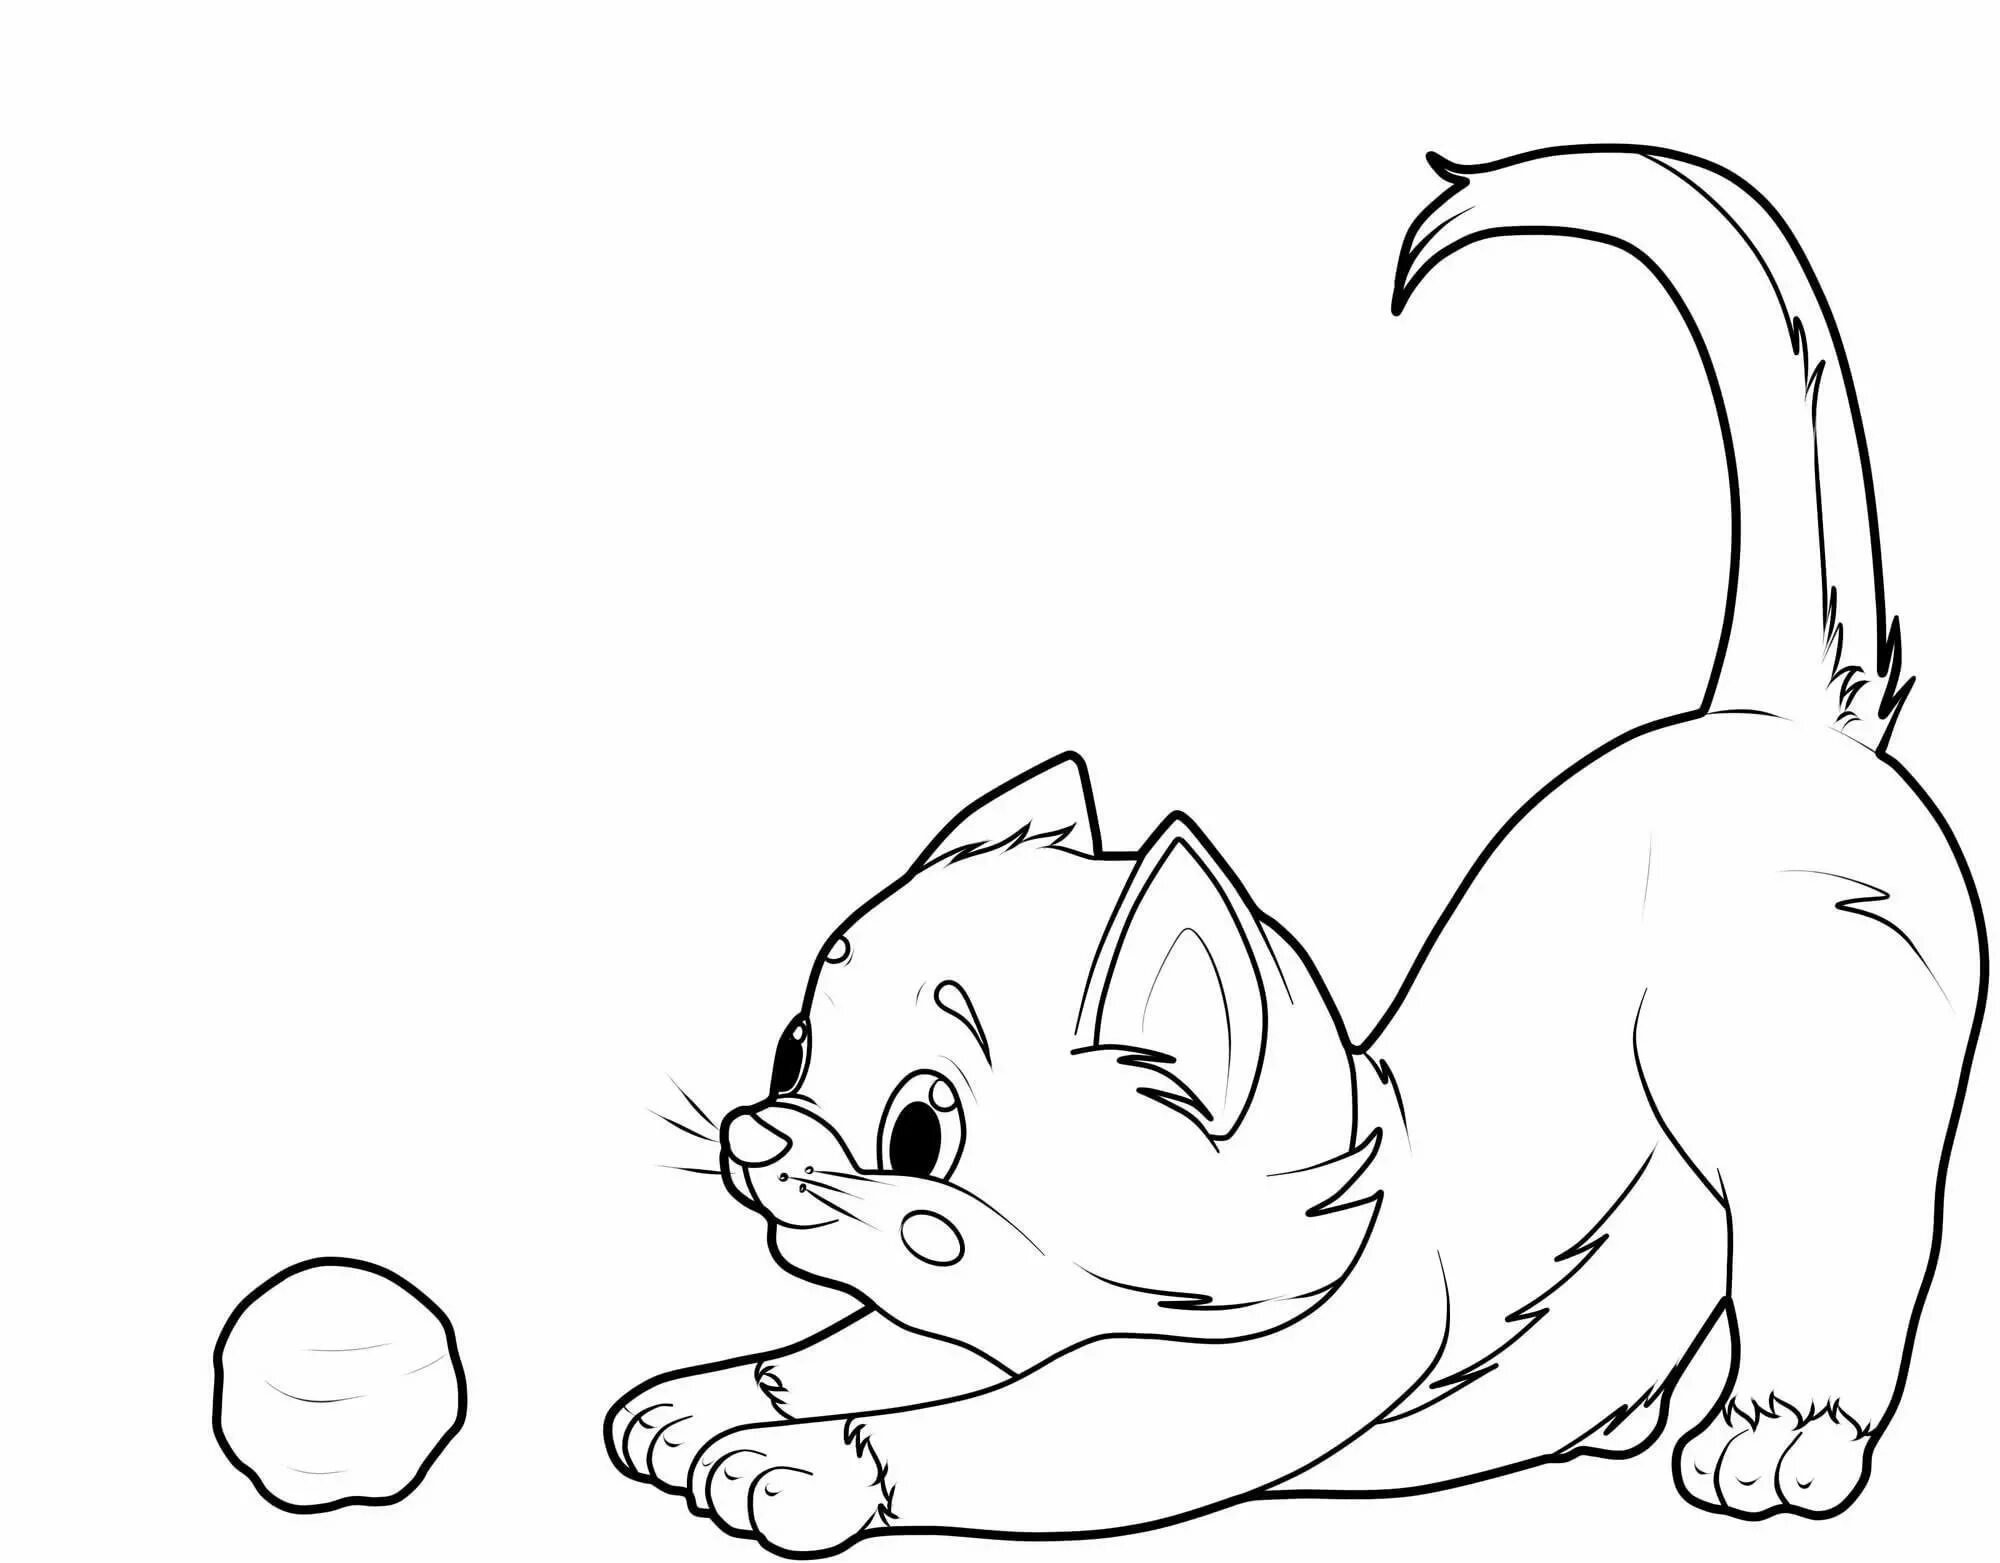 Раскраска яркая карандашная кошка